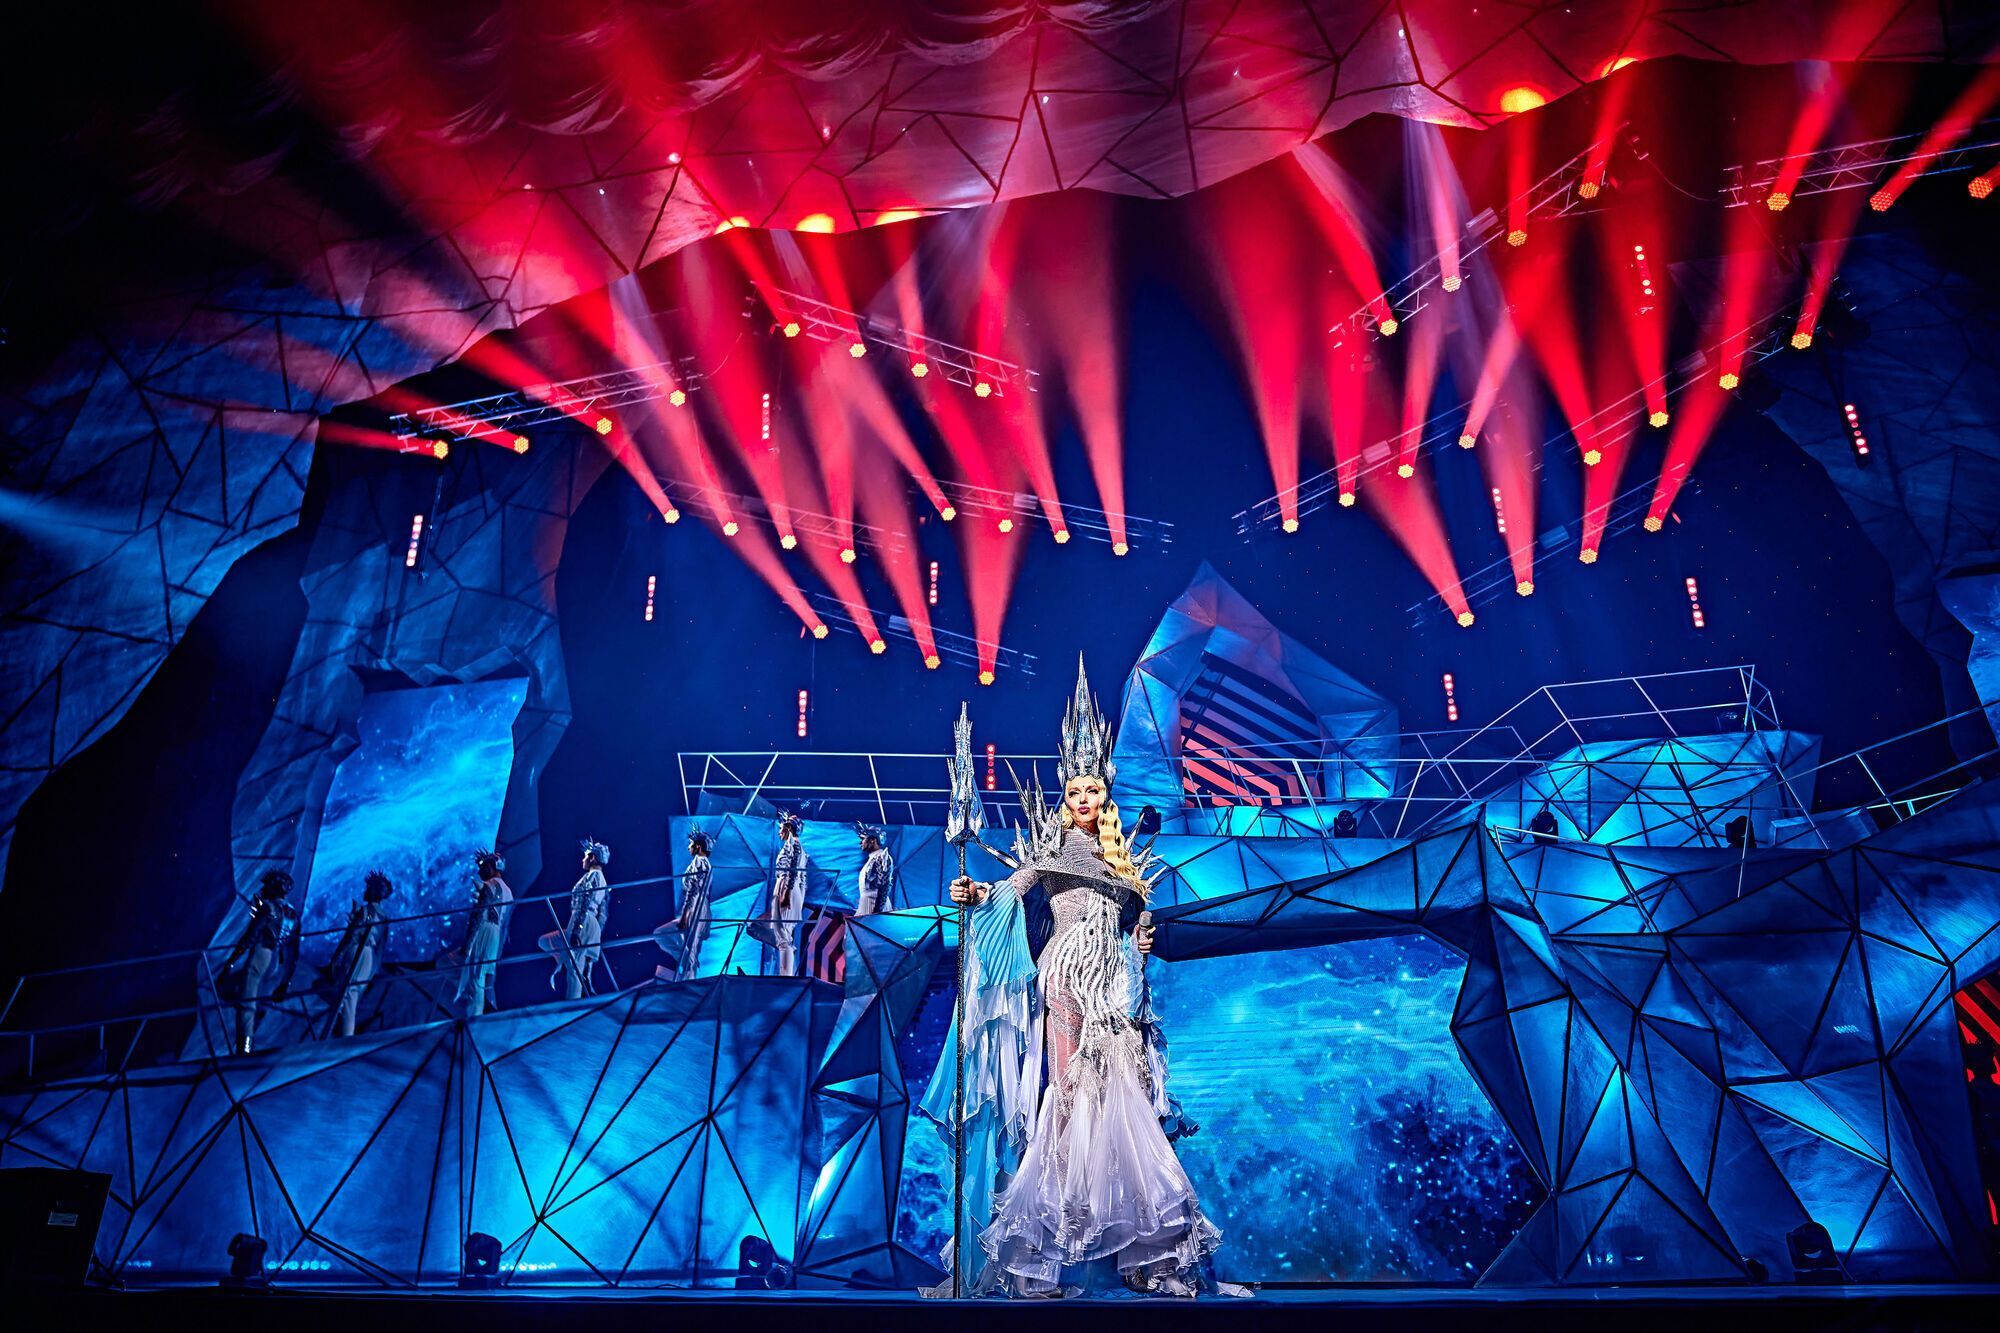 Бродвейский мюзикл Оли Поляковой вызвал настоящий аншлаг: раскуплено 40 тысяч билетов